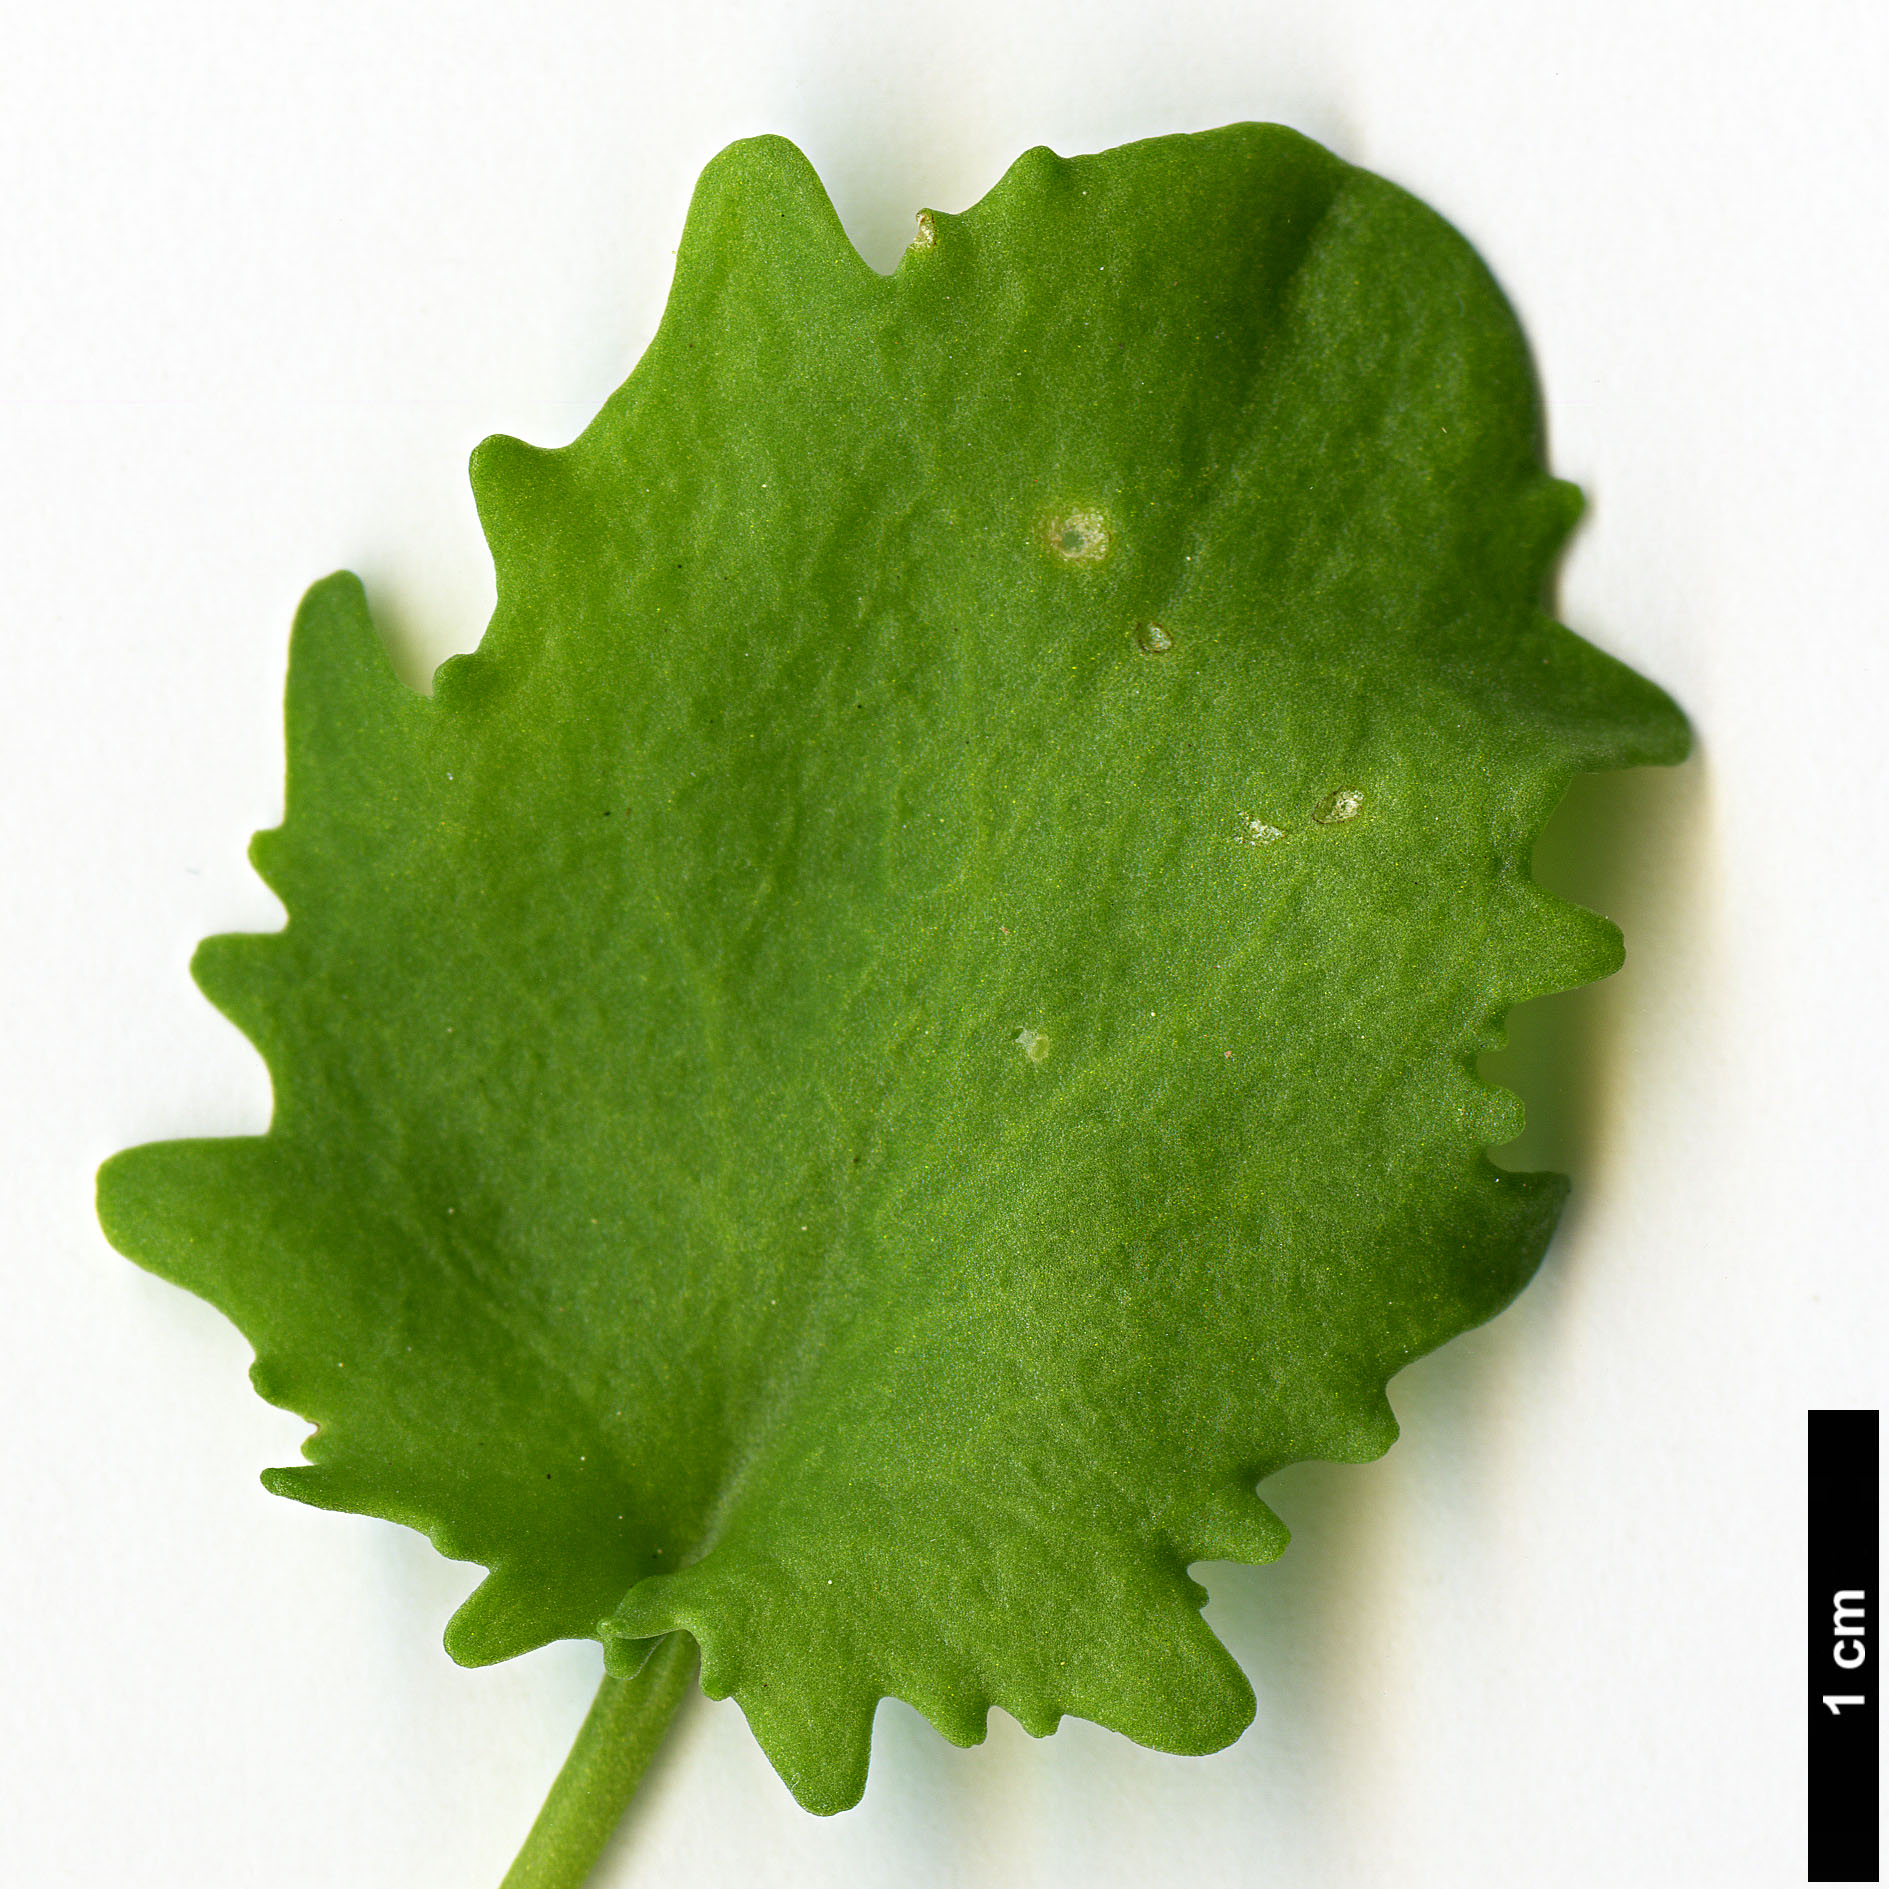 High resolution image: Family: Crassulaceae - Genus: Sedum - Taxon: populifolium